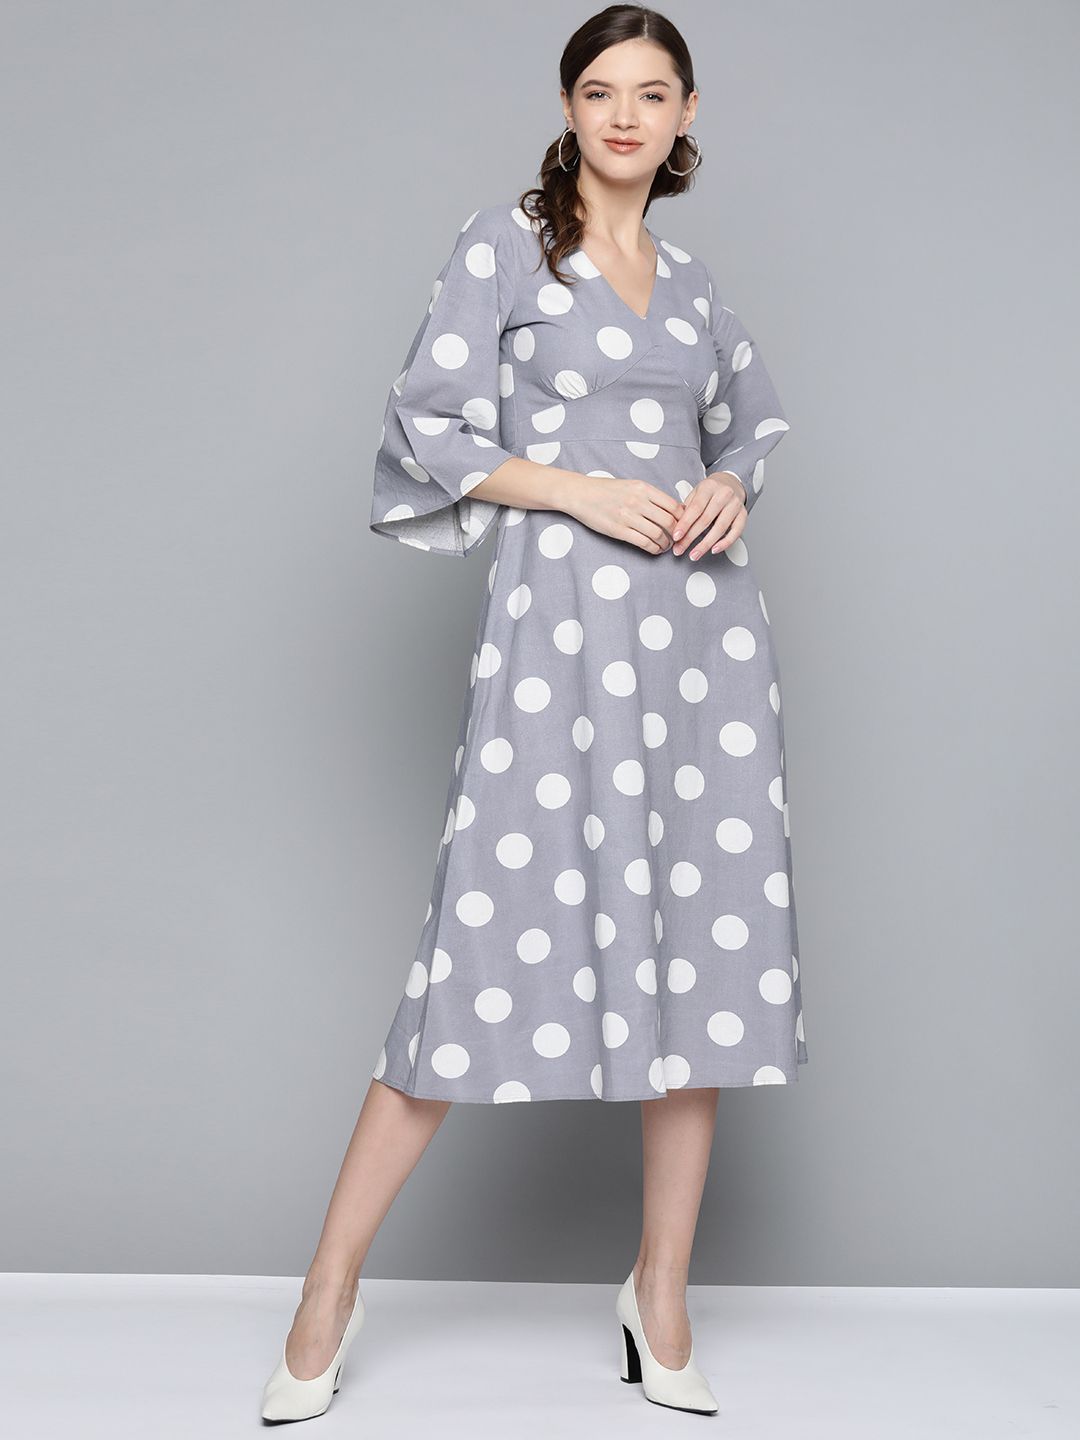 SASSAFRAS Grey & White Polka Dot Print Cotton Linen Midi A-Line Dress Price in India